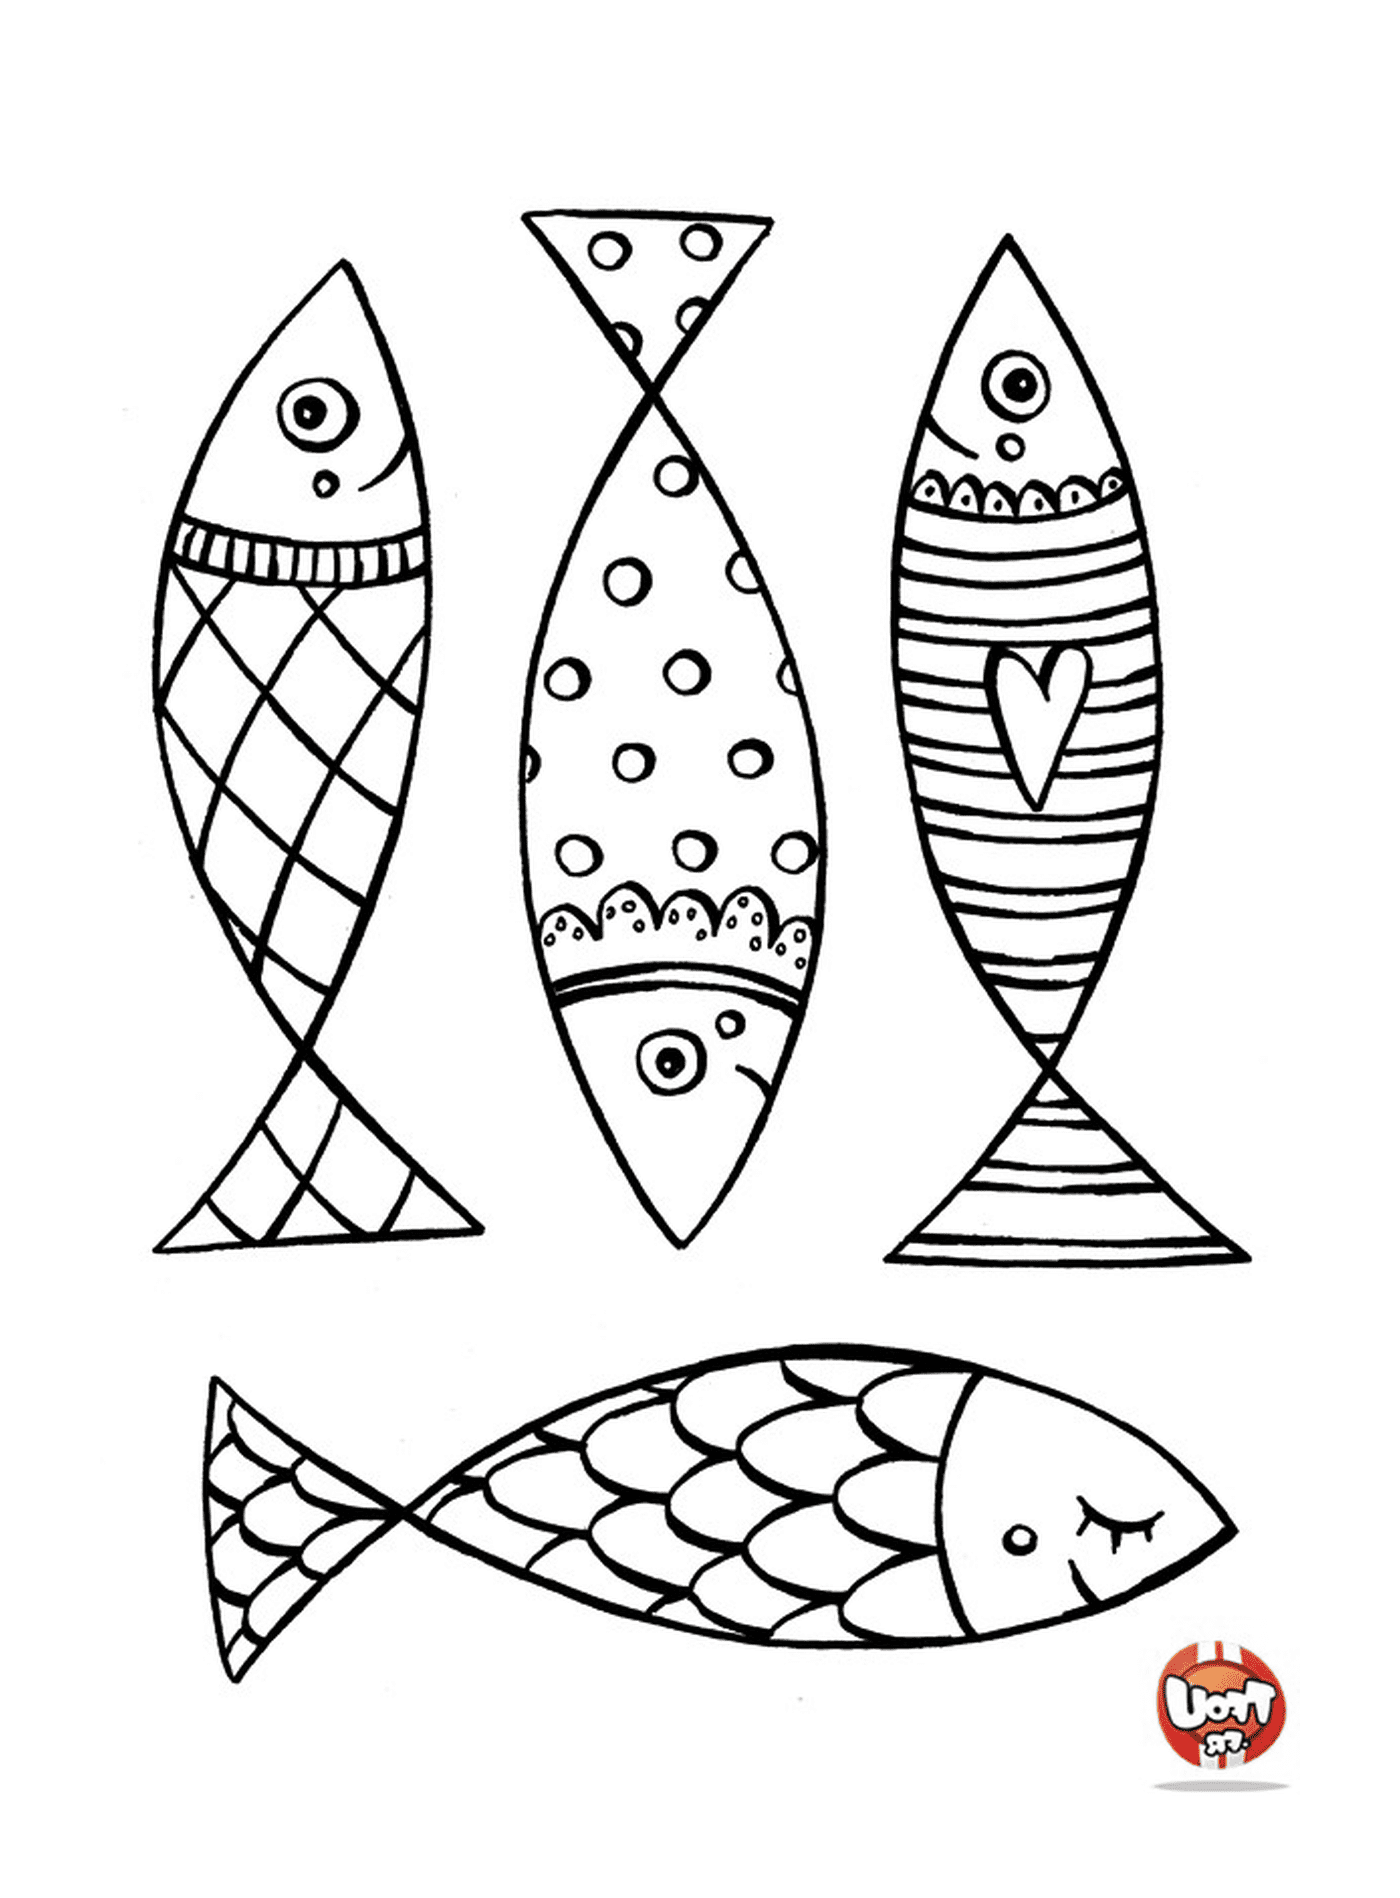  Conjunto de cuatro diseños de peces diferentes 